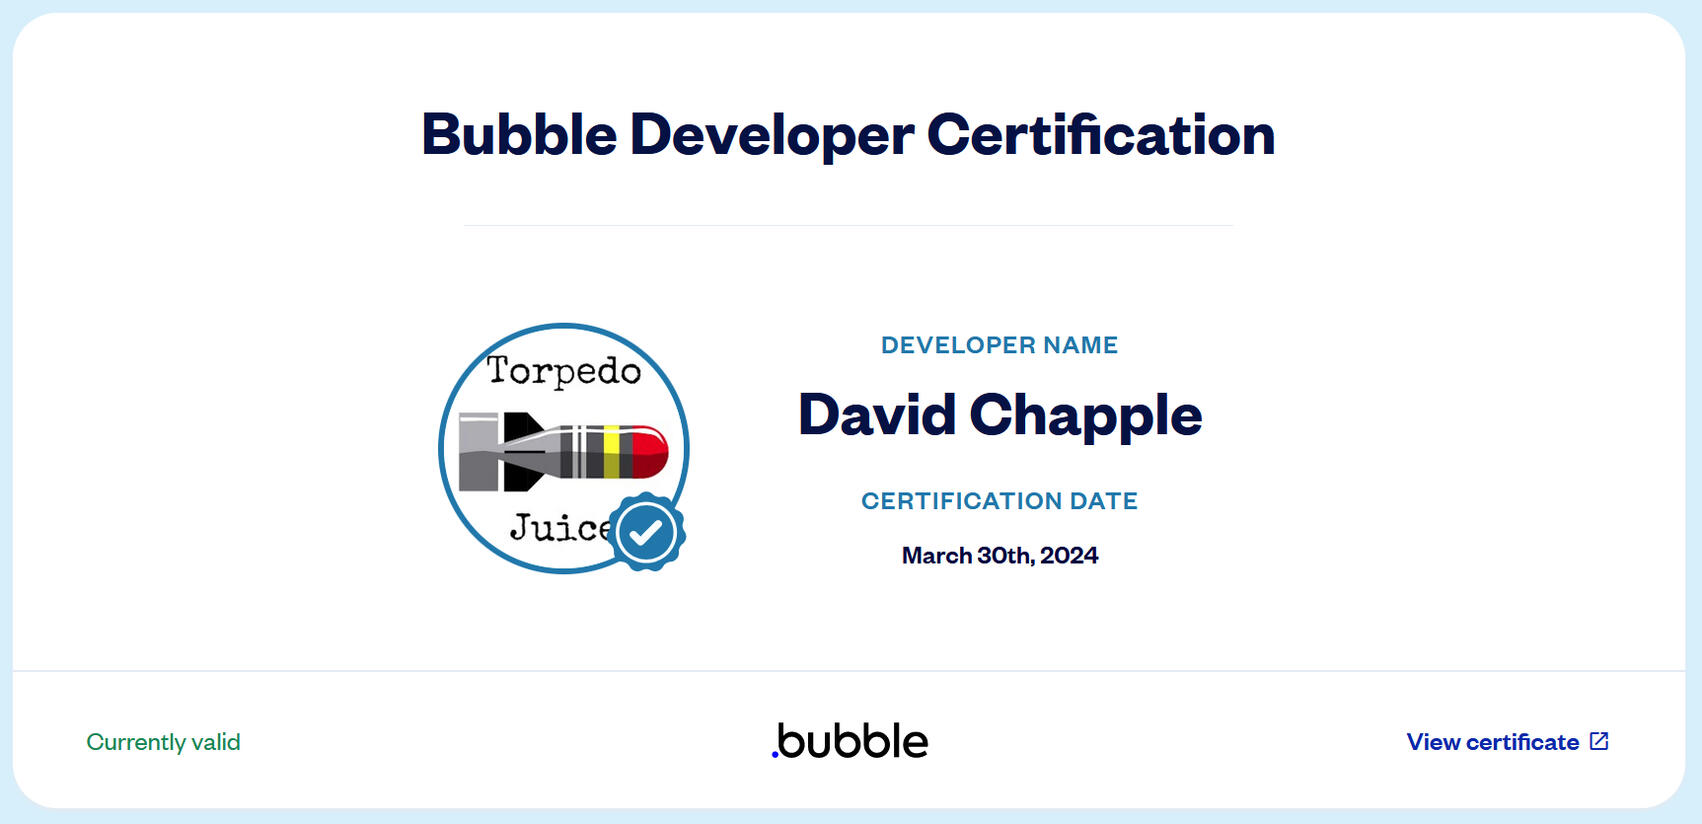 Bubble Developer Certificate for David Chapple